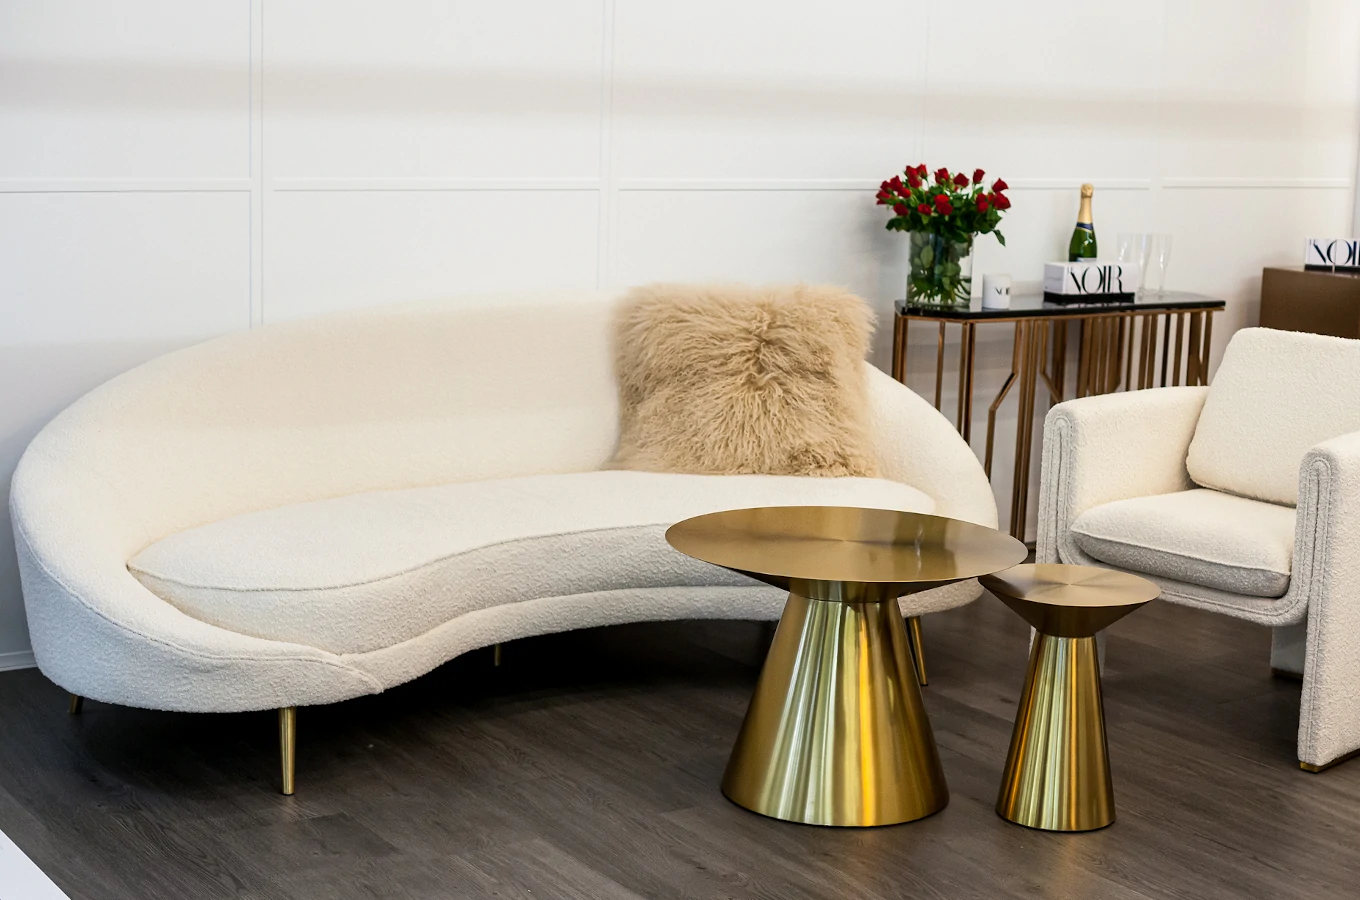 Sofa RENE w kształcie nerki, kremowa boucle / szerokość 235 cm